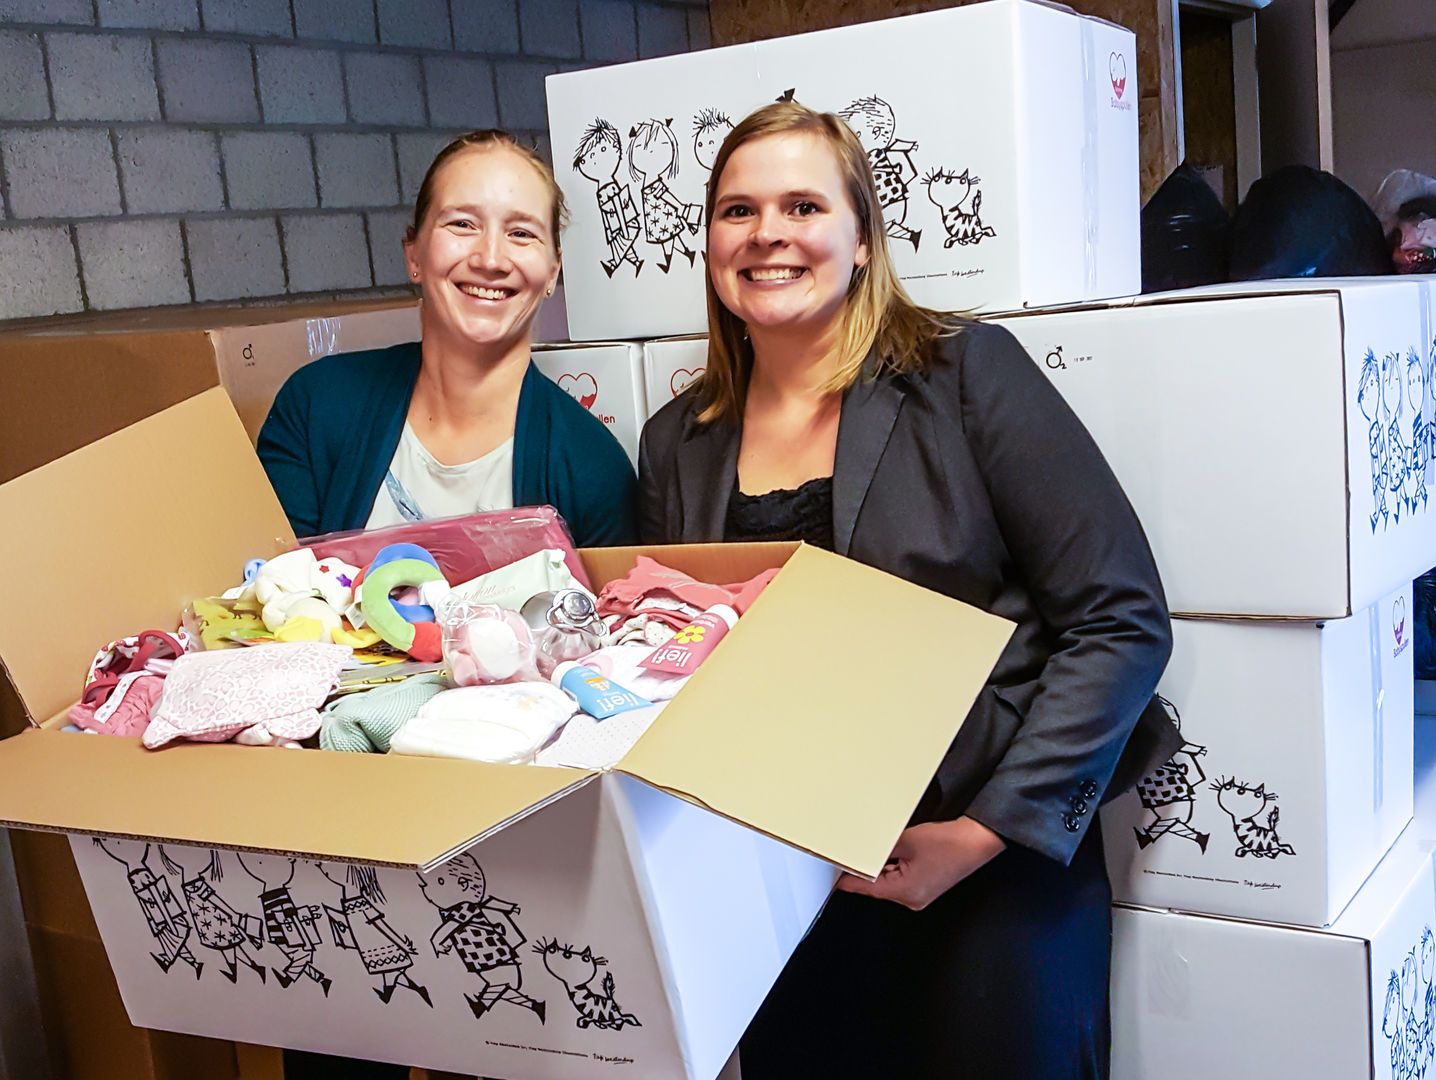 gips solide Slijm 3000ste babystartpakket voor Stichting Babyspullen - KraamZus.nl